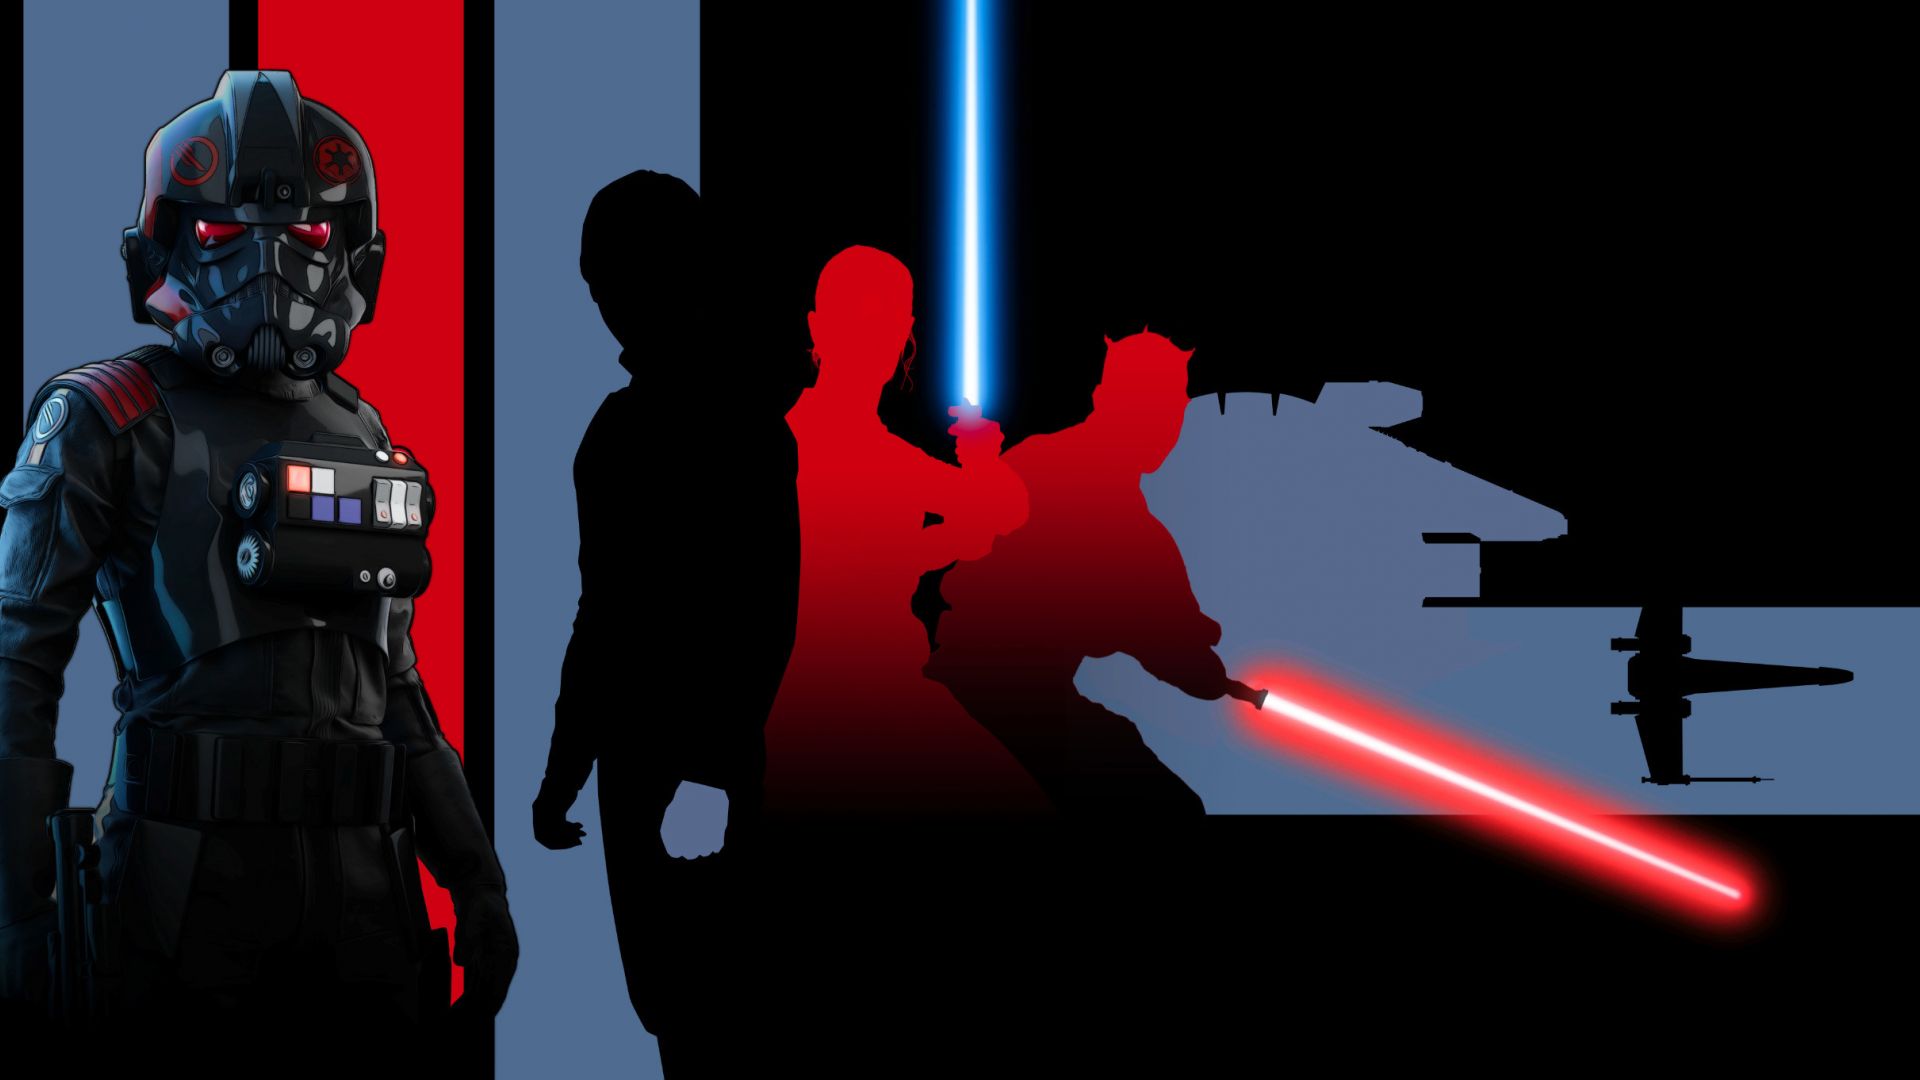 Wallpaper Star wars battlefront 2, video game, dark, artwork